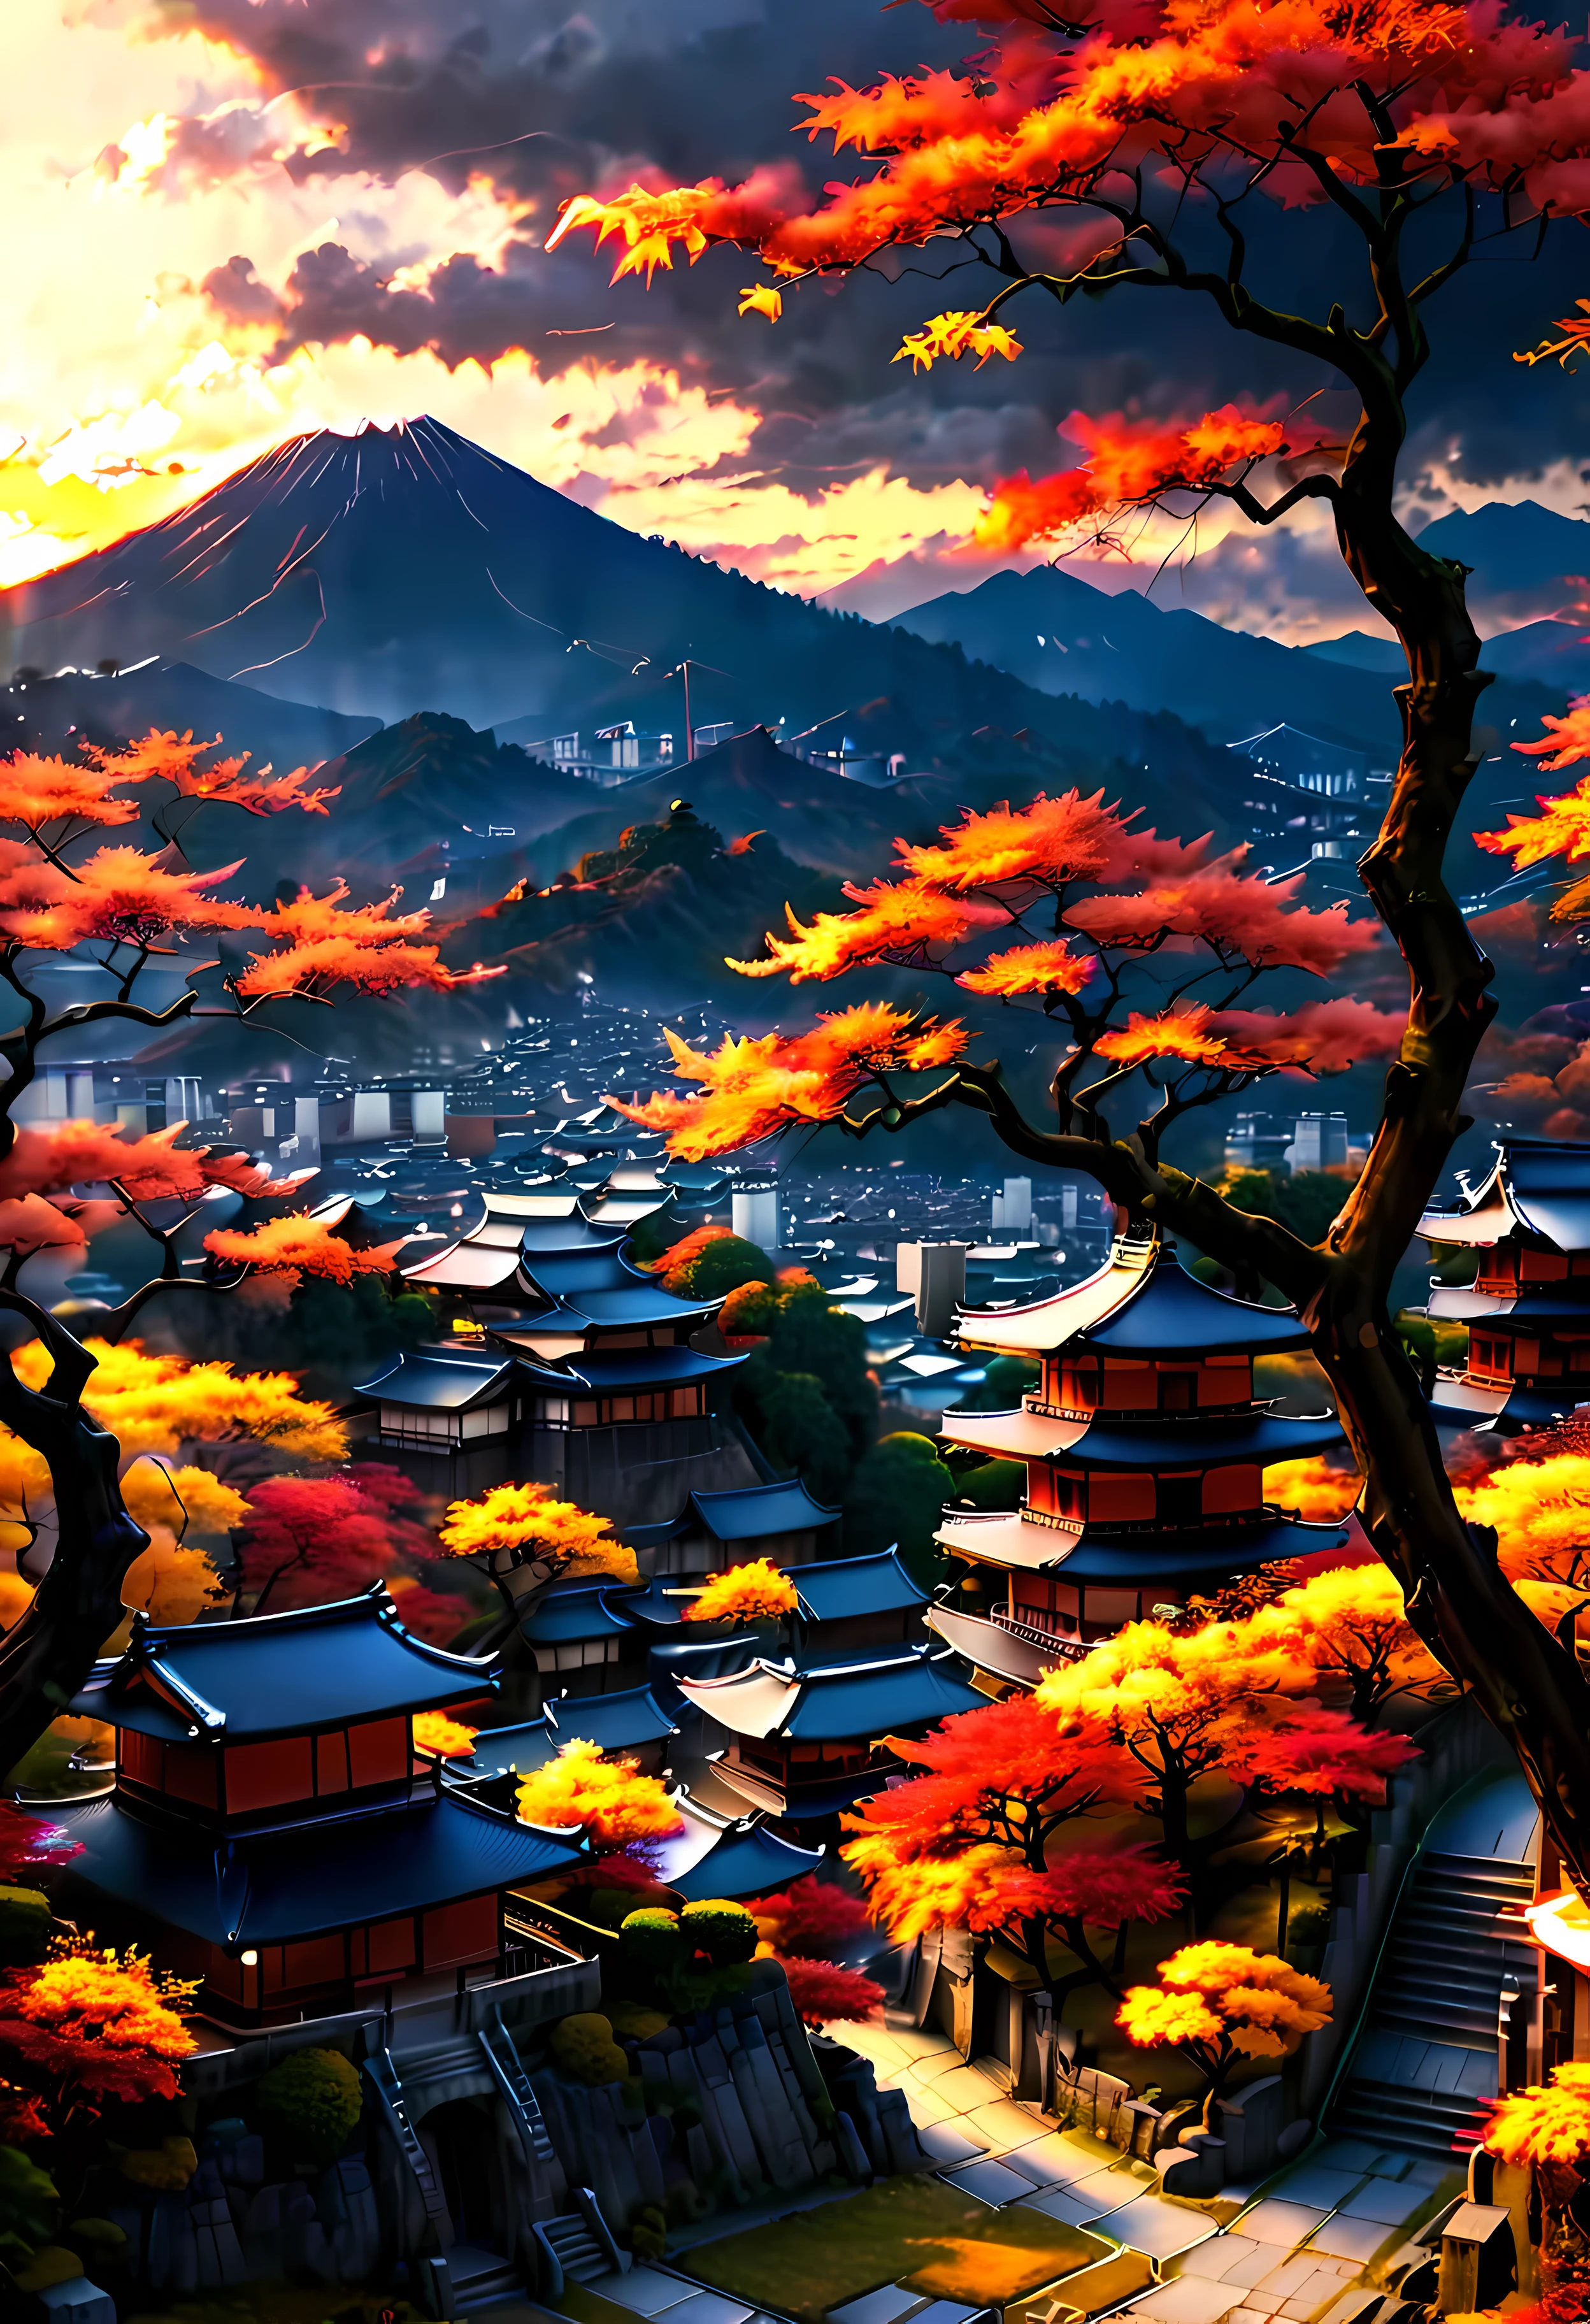 공원 테라스에 있는 붉은 가을 나무(Red Fall Tree)는 산의 전망을 감상할 수 있는 고대 도시 교토(Kyoto)를 내려다보고 있습니다., 일몰 빛에 둘러싸인 매혹적인 고대 도시 풍경,((골든아워 시간):1.2),((일본의 고대 도시):1.2),((가을의 일몰 하늘):1.1),섬세한 황금 시간 조명, 놀라운 배경화면, 아름다운 주변 환경, 낙관적인 매트 페인팅, 아름다운 디지털 작품, 일본의 고대 도시 background, 아름답고 상세한 장면, UHD 언더그라운드, UHD 풍경, 장엄한 컨셉 아트, 아름다운 고대 도시. |(최대 16K 해상도의 걸작), 최고의 품질, (매우 상세한 CG Unity 16k 배경화면 품질),(부드러운 색상의 16k 매우 상세한 디지털 아트),매우 상세한. | 완벽한 이미지,16k UE5,공식 그림, 지나치게 섬세한, 피사계 심도, 대비 없음, 깨끗하고 선명한 초점, 전문적인, 흐려짐 없음. | (((자세한 세부 사항))).